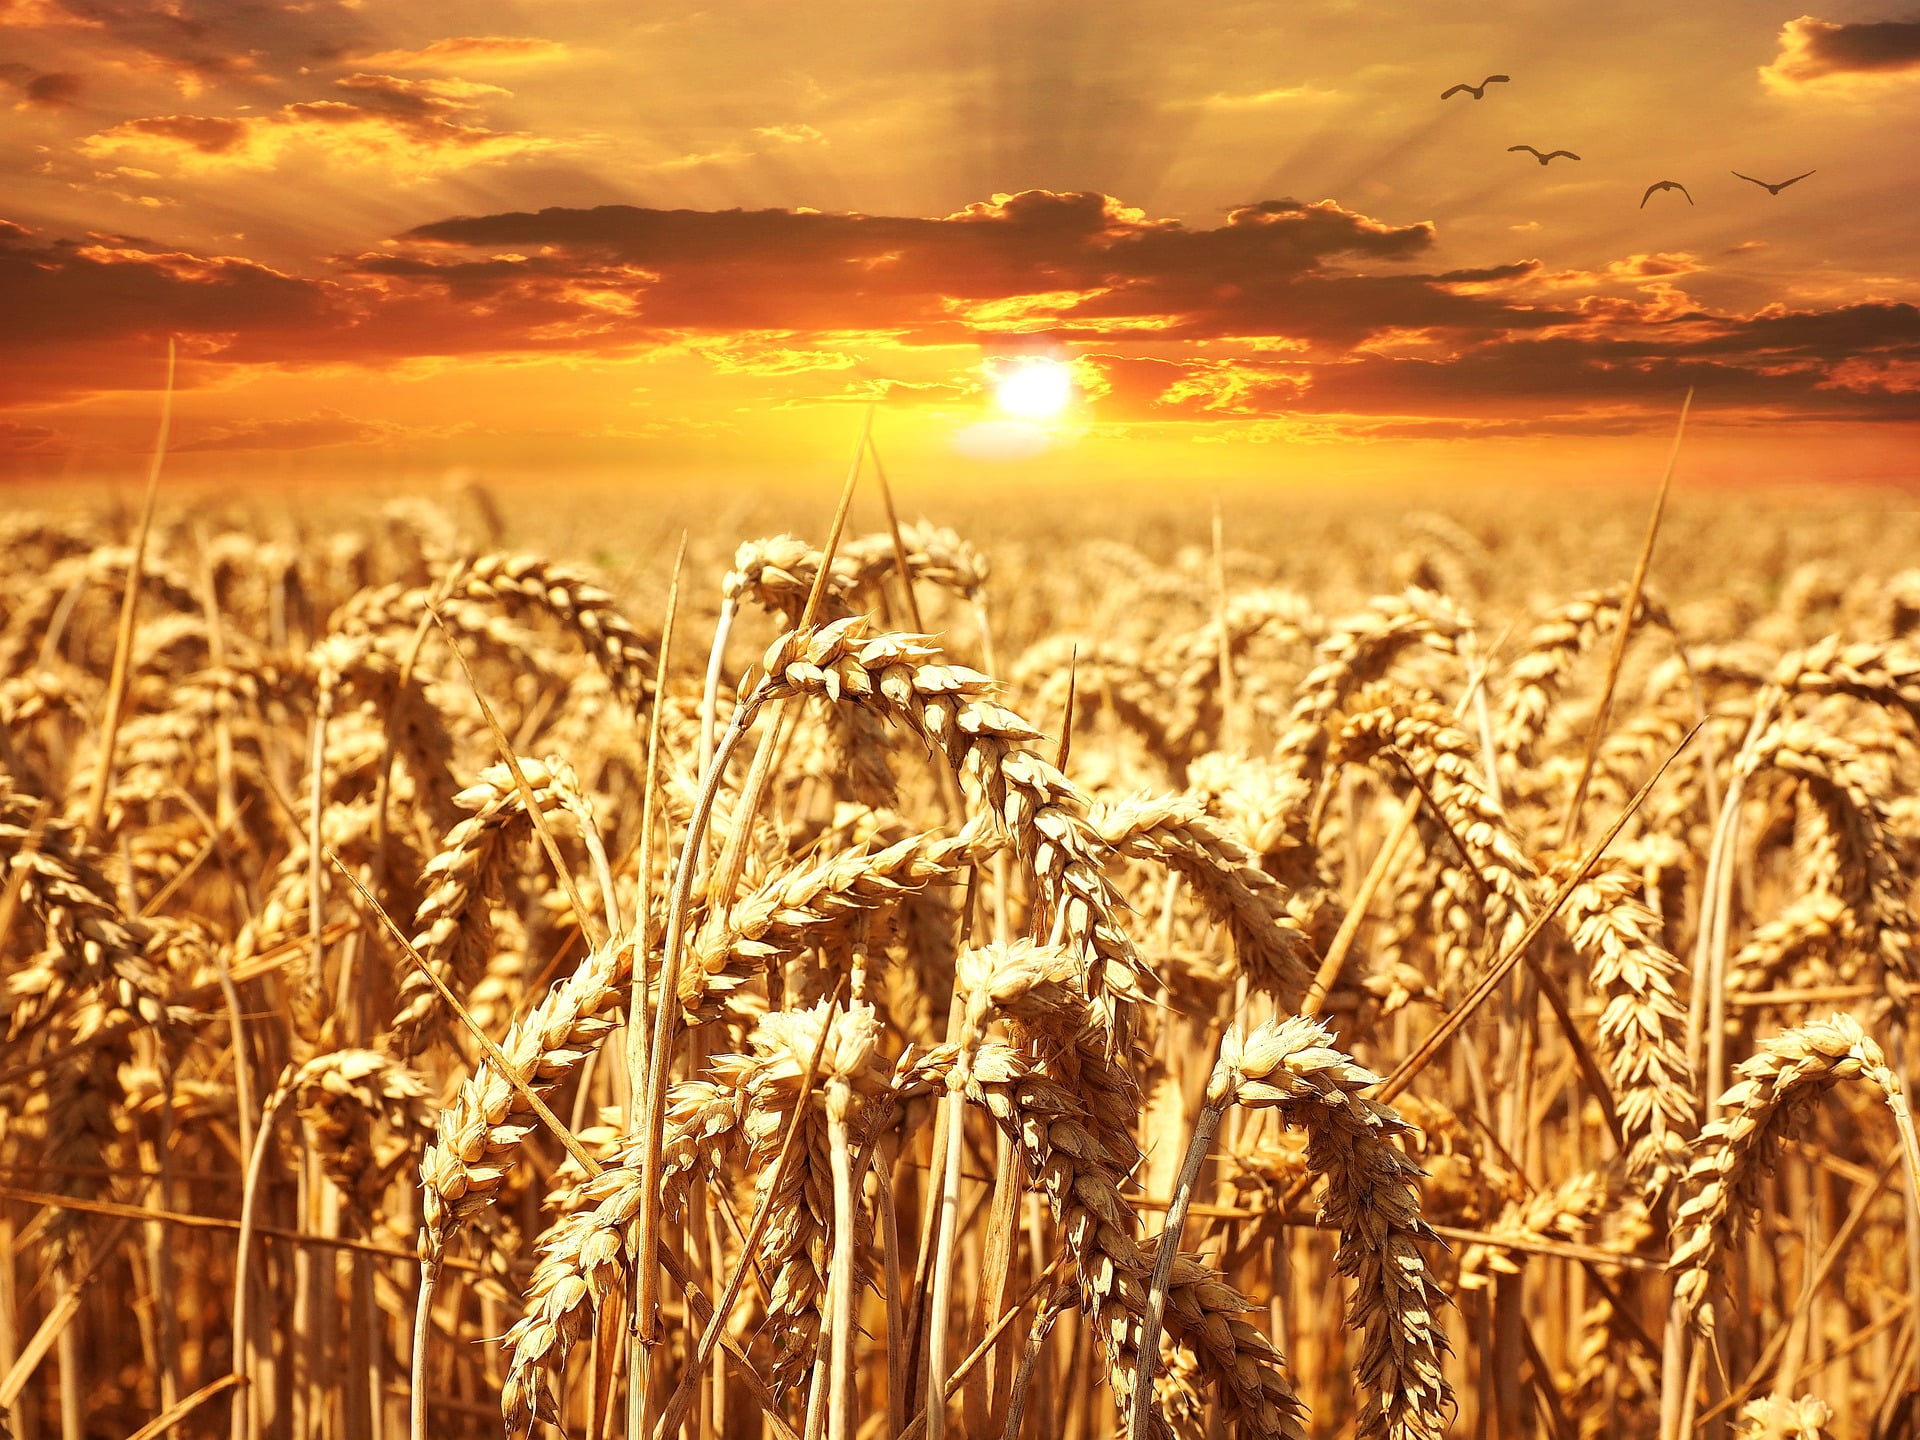 Termőföld gabonával naplementében, az aranykalászos gazda képzettséget bemutató cikk illusztrációja